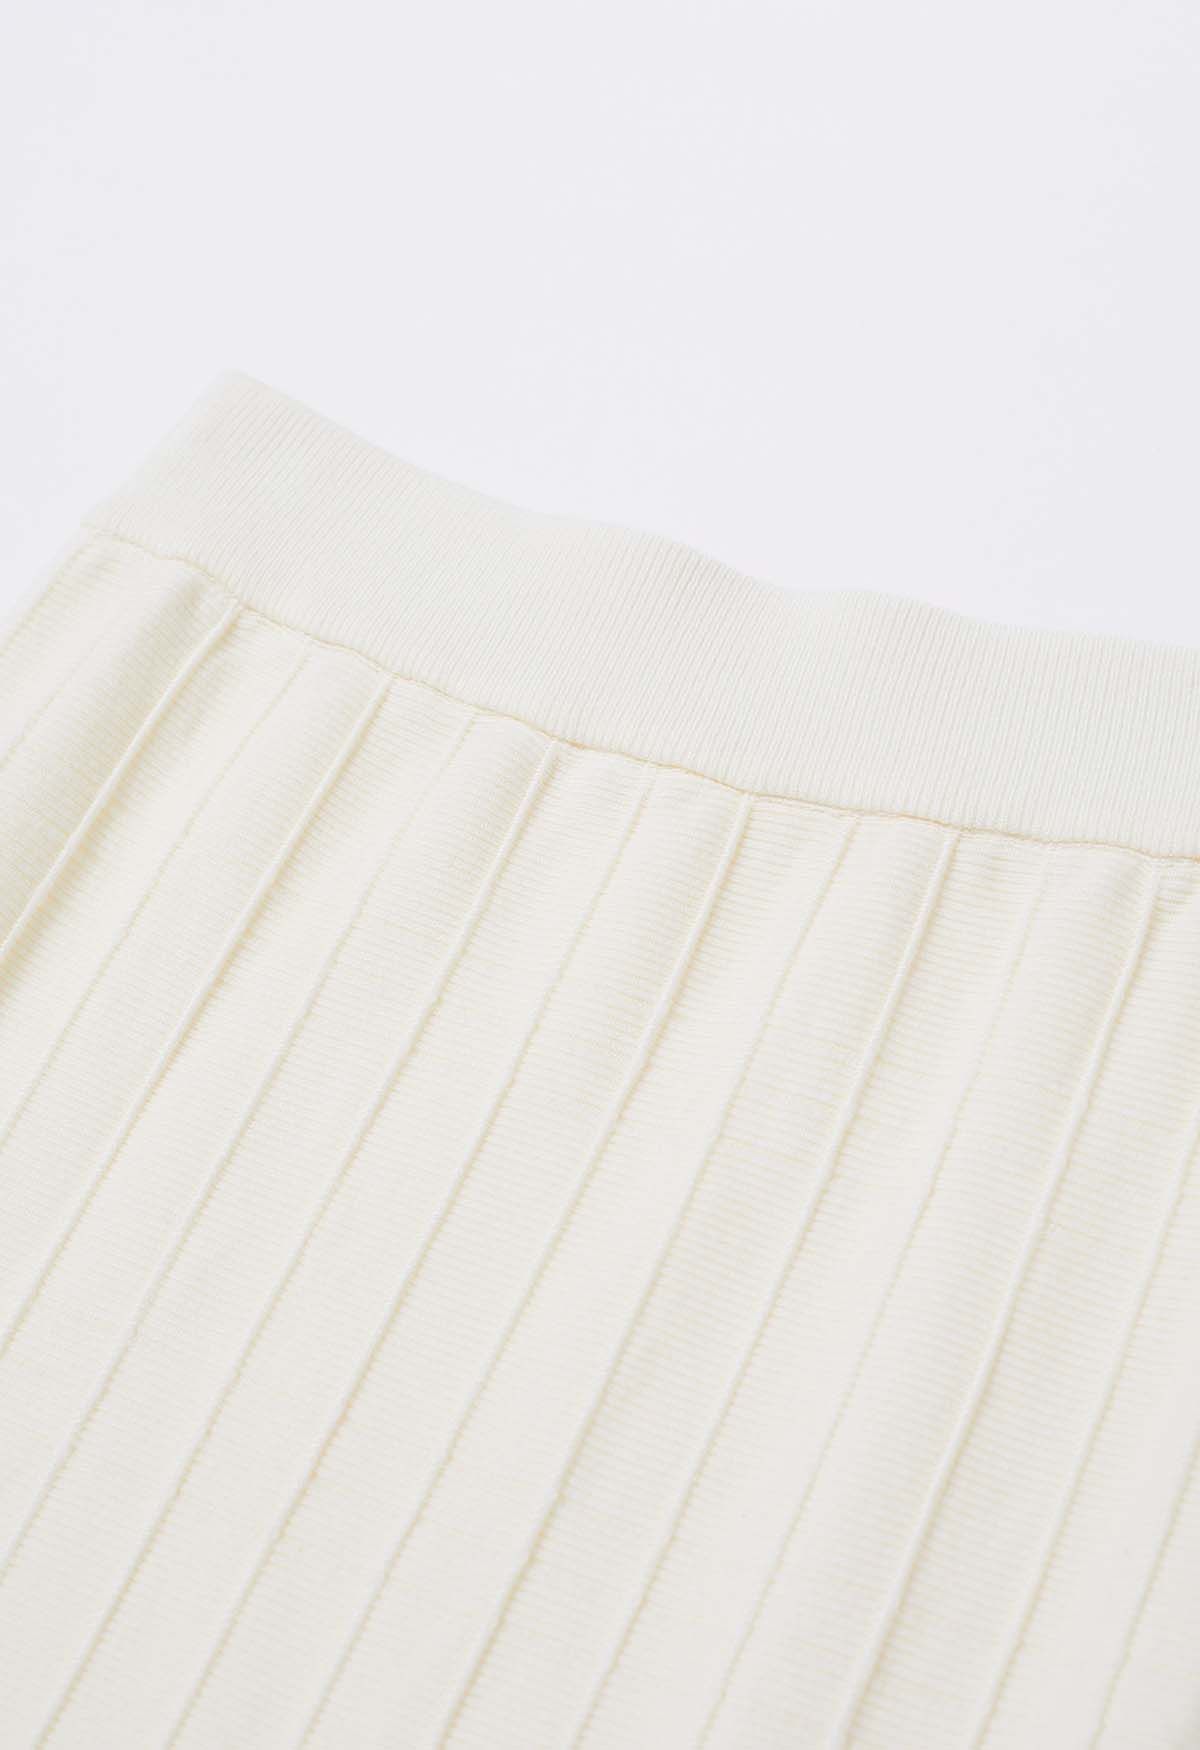 Seam Line Knit Mermaid Skirt in Cream